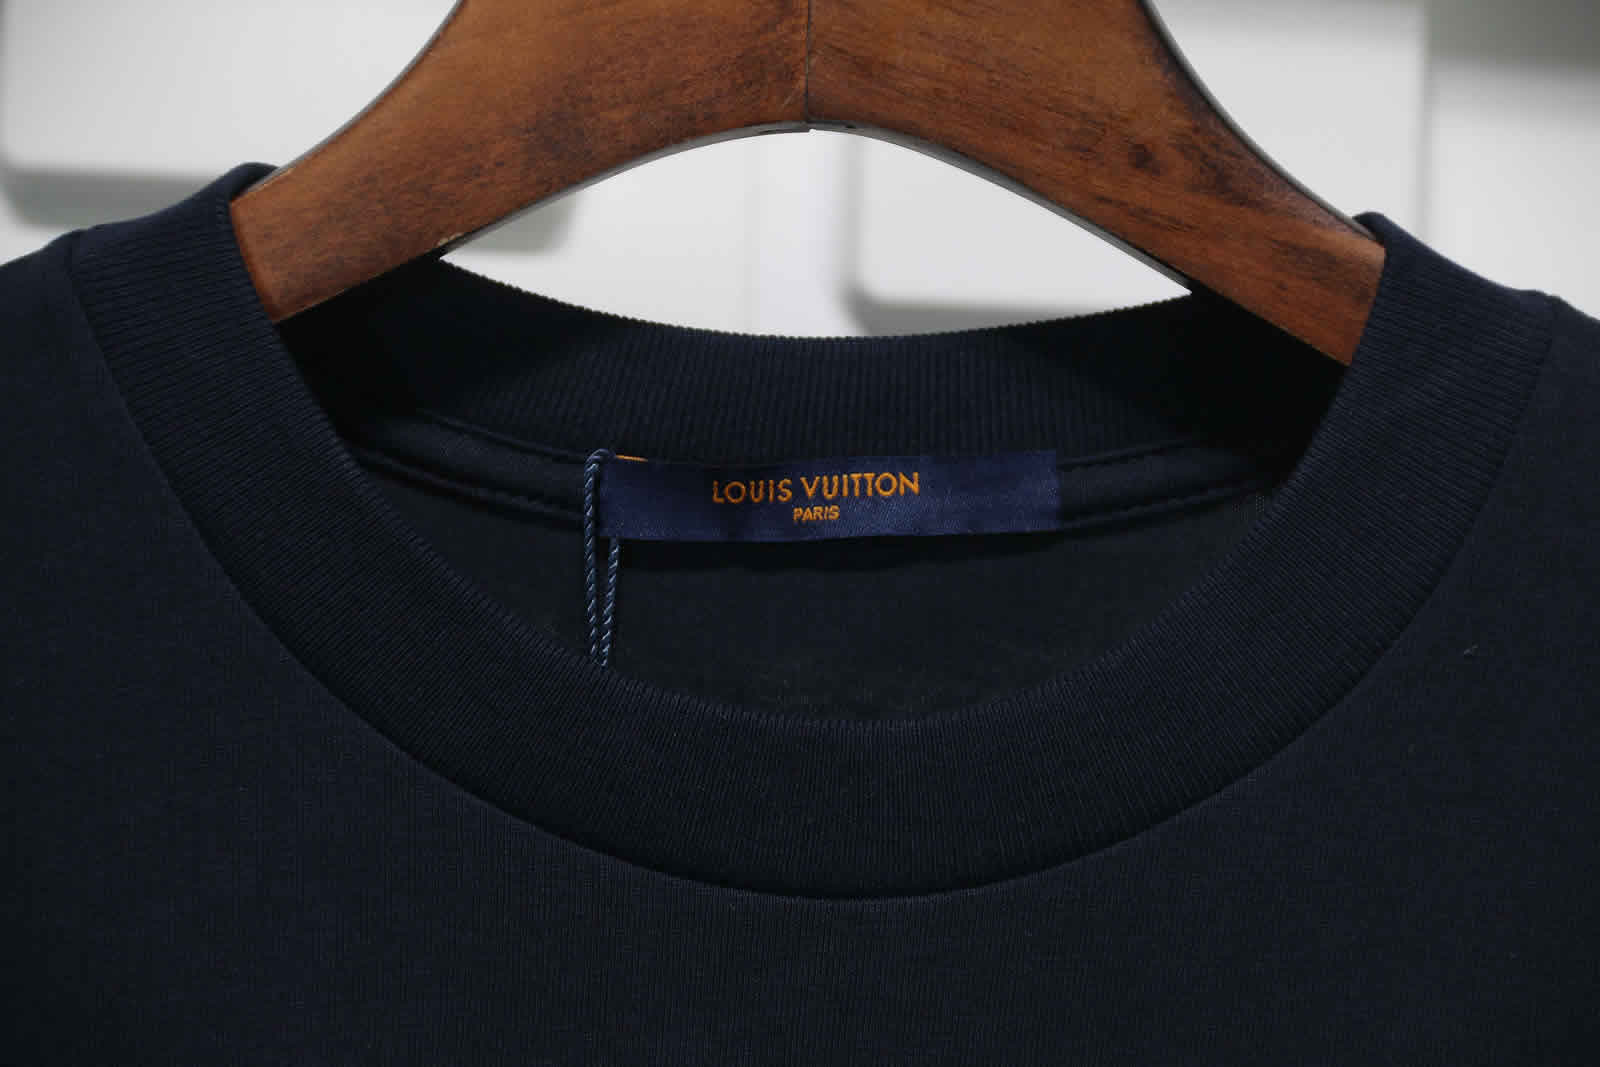 Louis Vuitton Catwalk T Shirt 2021 8 - kickbulk.org